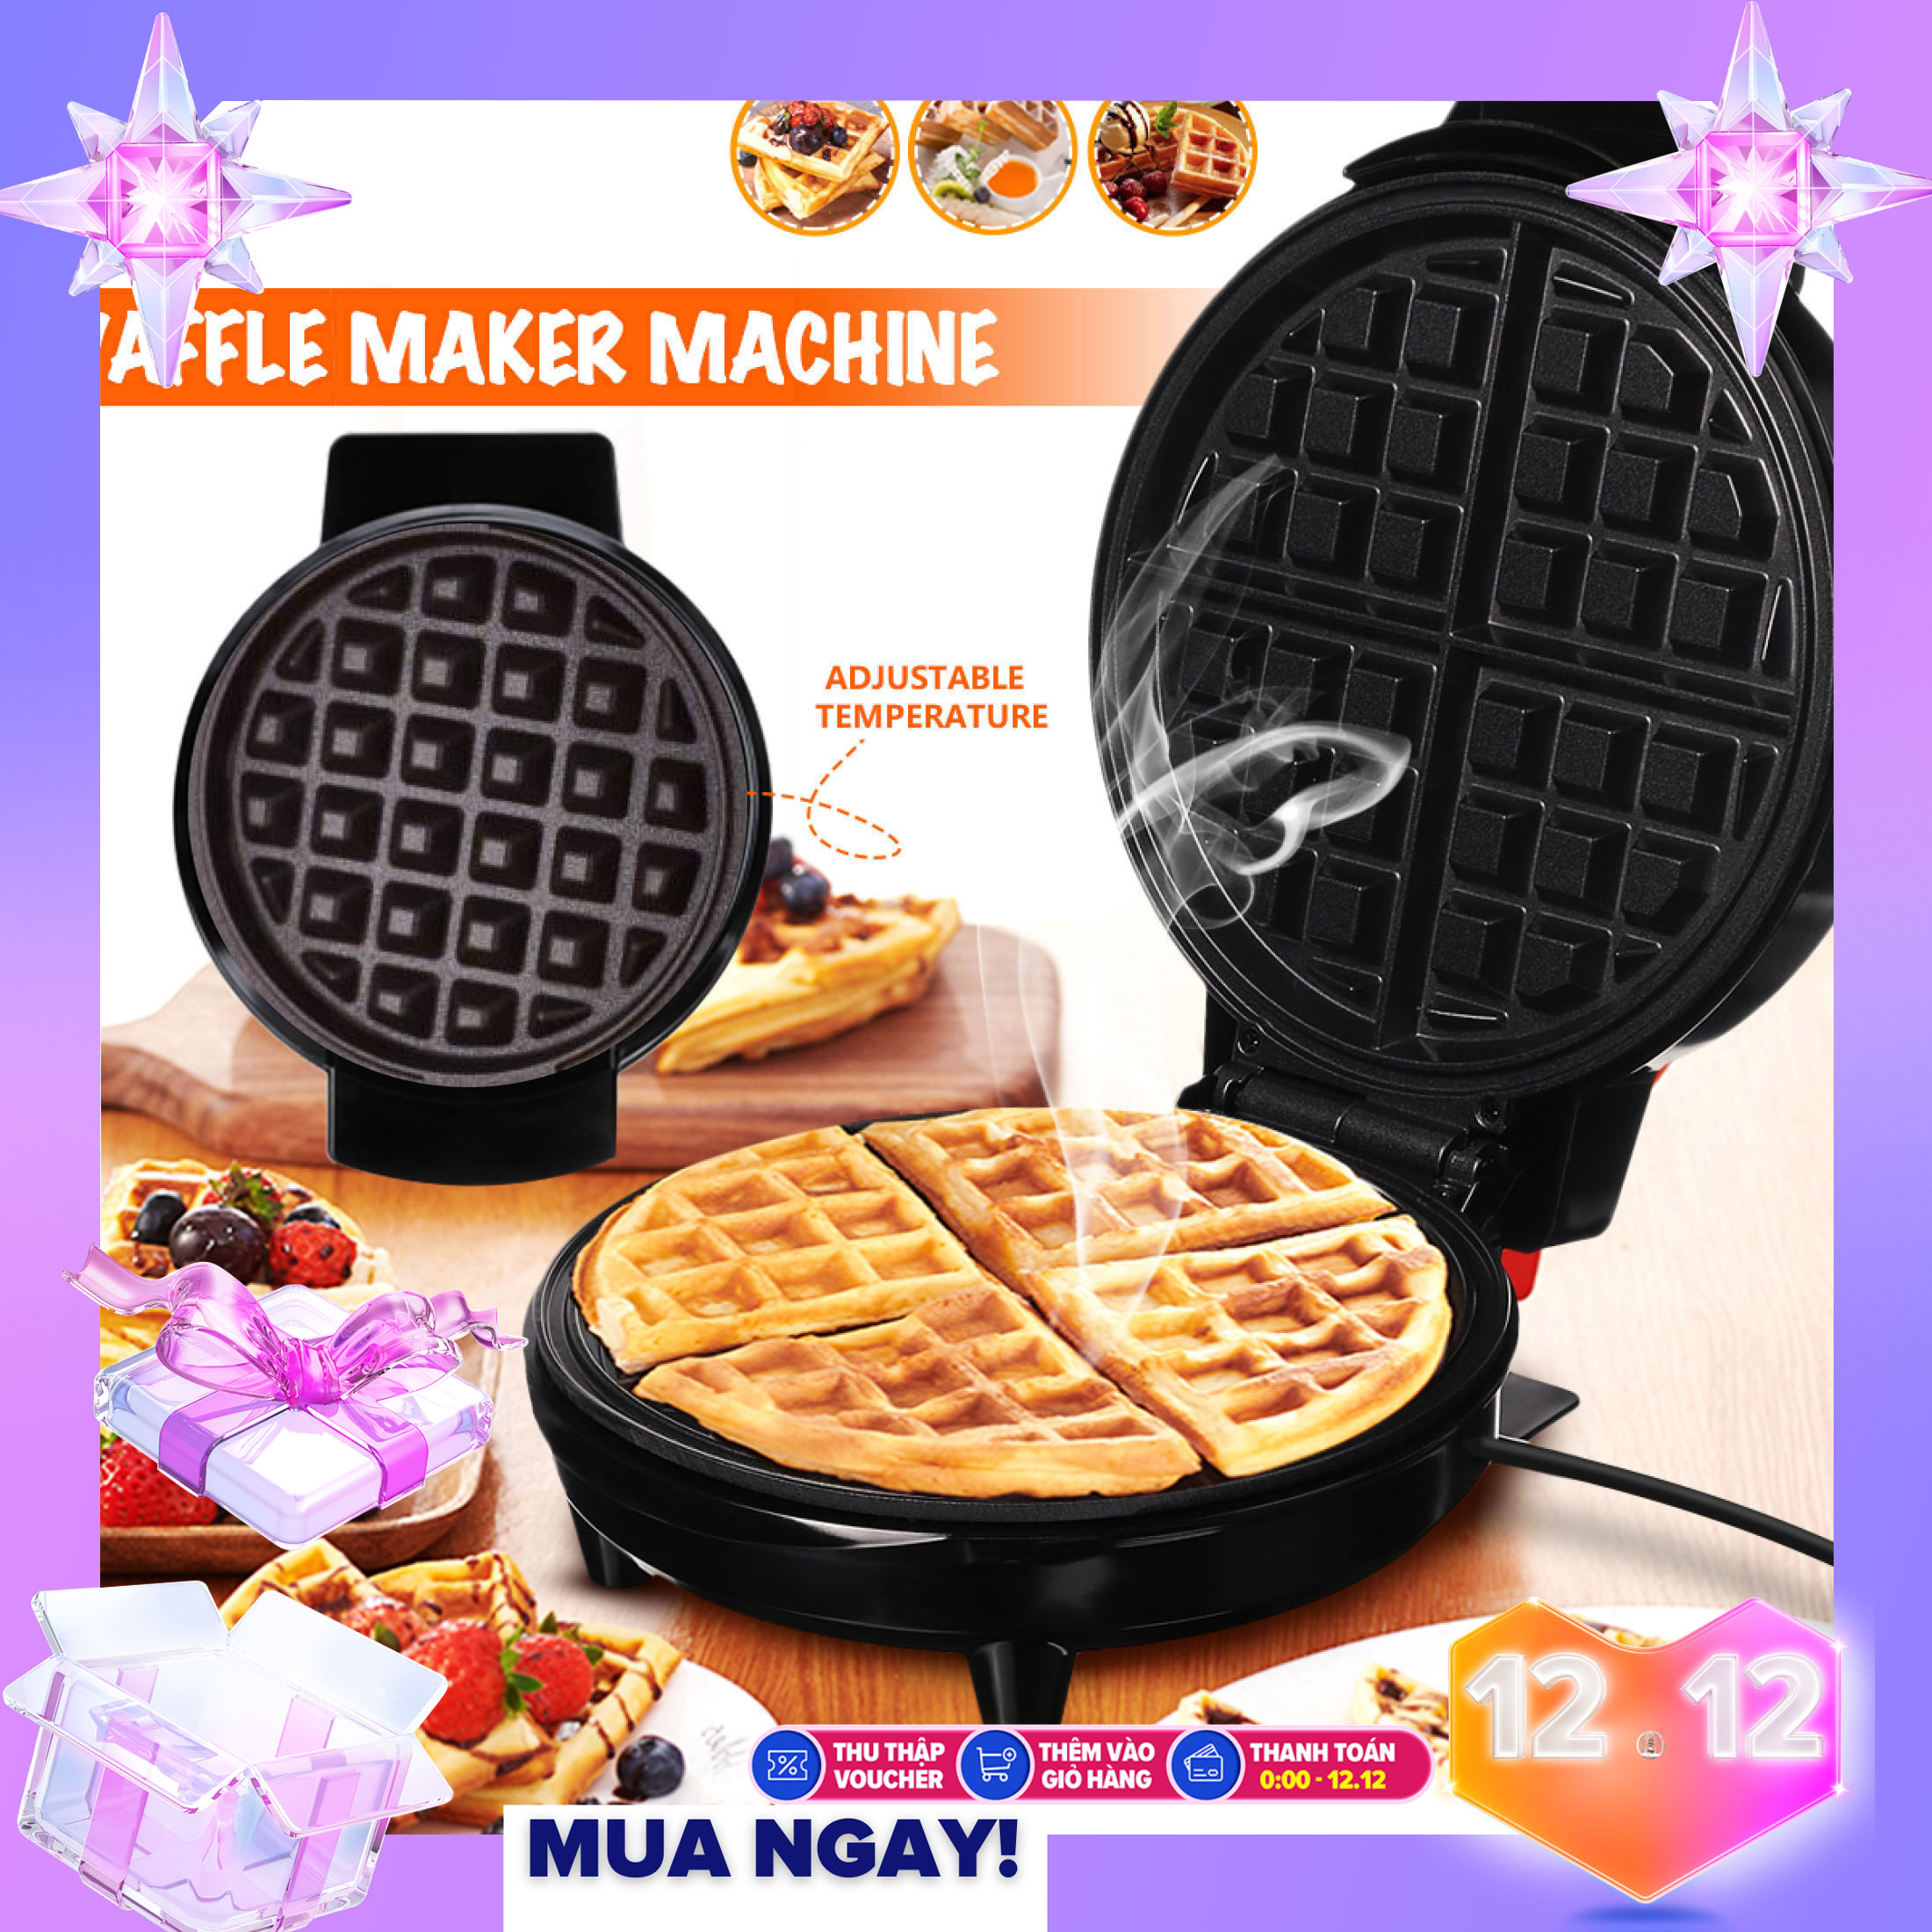 Máy Nướng Bánh Cao Cấp Mini Waffle Nồi Điện Bánh Quế Nhà Sản Xuất Lò Nướng Bánh Trứng Bong Bóng Ăn Sáng Waffle Máy Chảo Nướng Bánh Trứng Paninis Eggette Máy - Bảo Hành Toàn Quốc 6 Tháng Bởi Nhà Bán Hàng SHOP BBQ